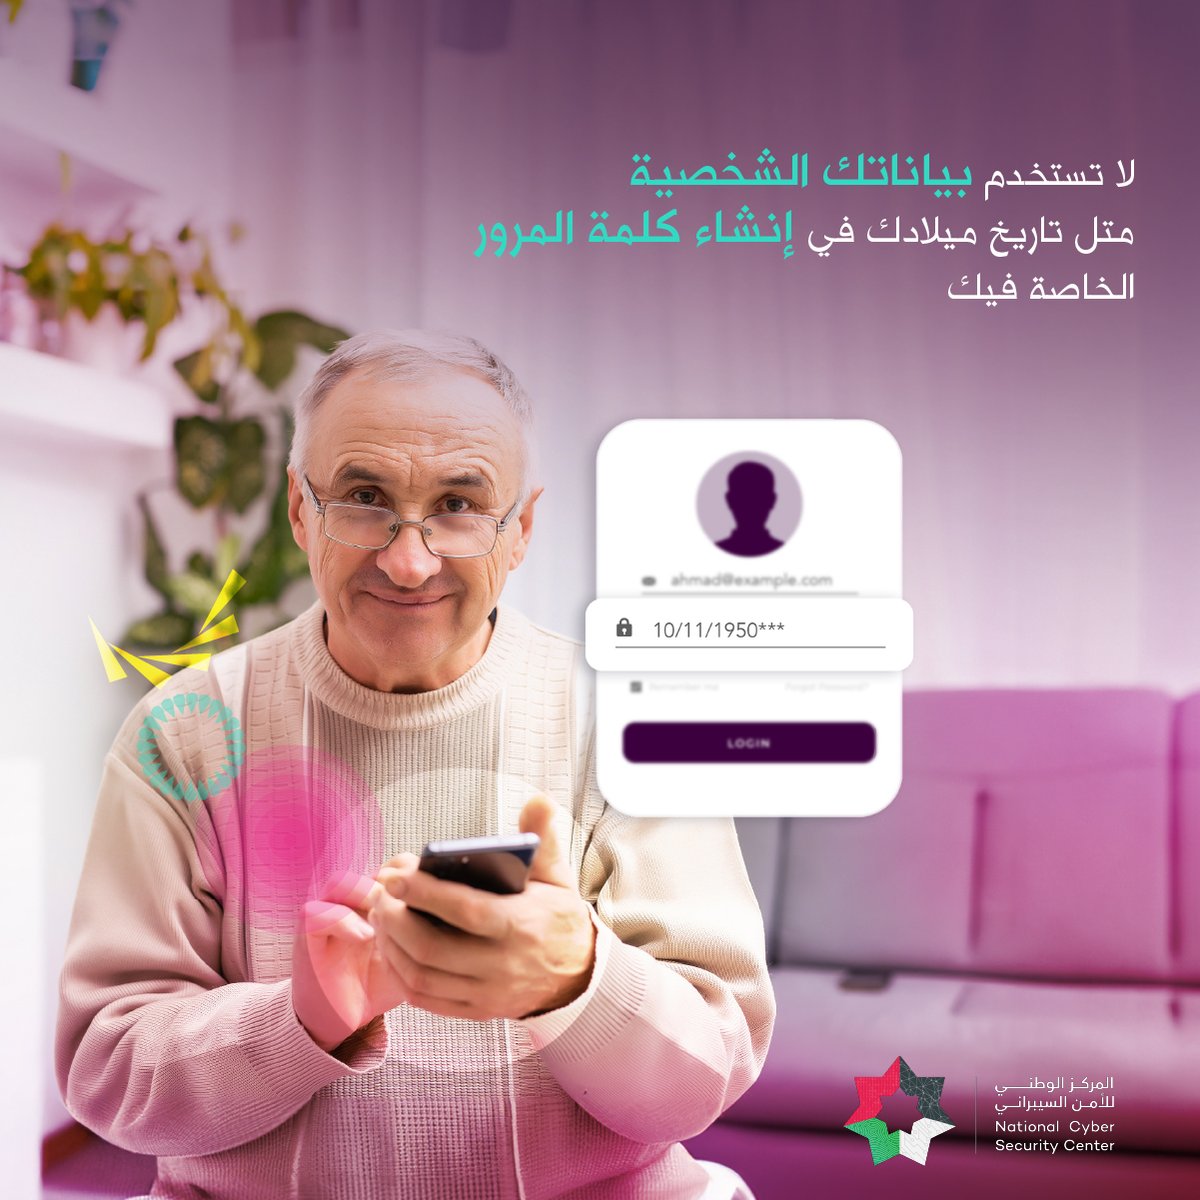 لضمان حماية خصوصية بياناتك وحساباتك عبر الإنترنت، احرص على استخدام كلمات مرور فريدة لكل موقع وتطبيق، واحرص على تغييرها باستمرار. #zain #jordan #ramadan #password